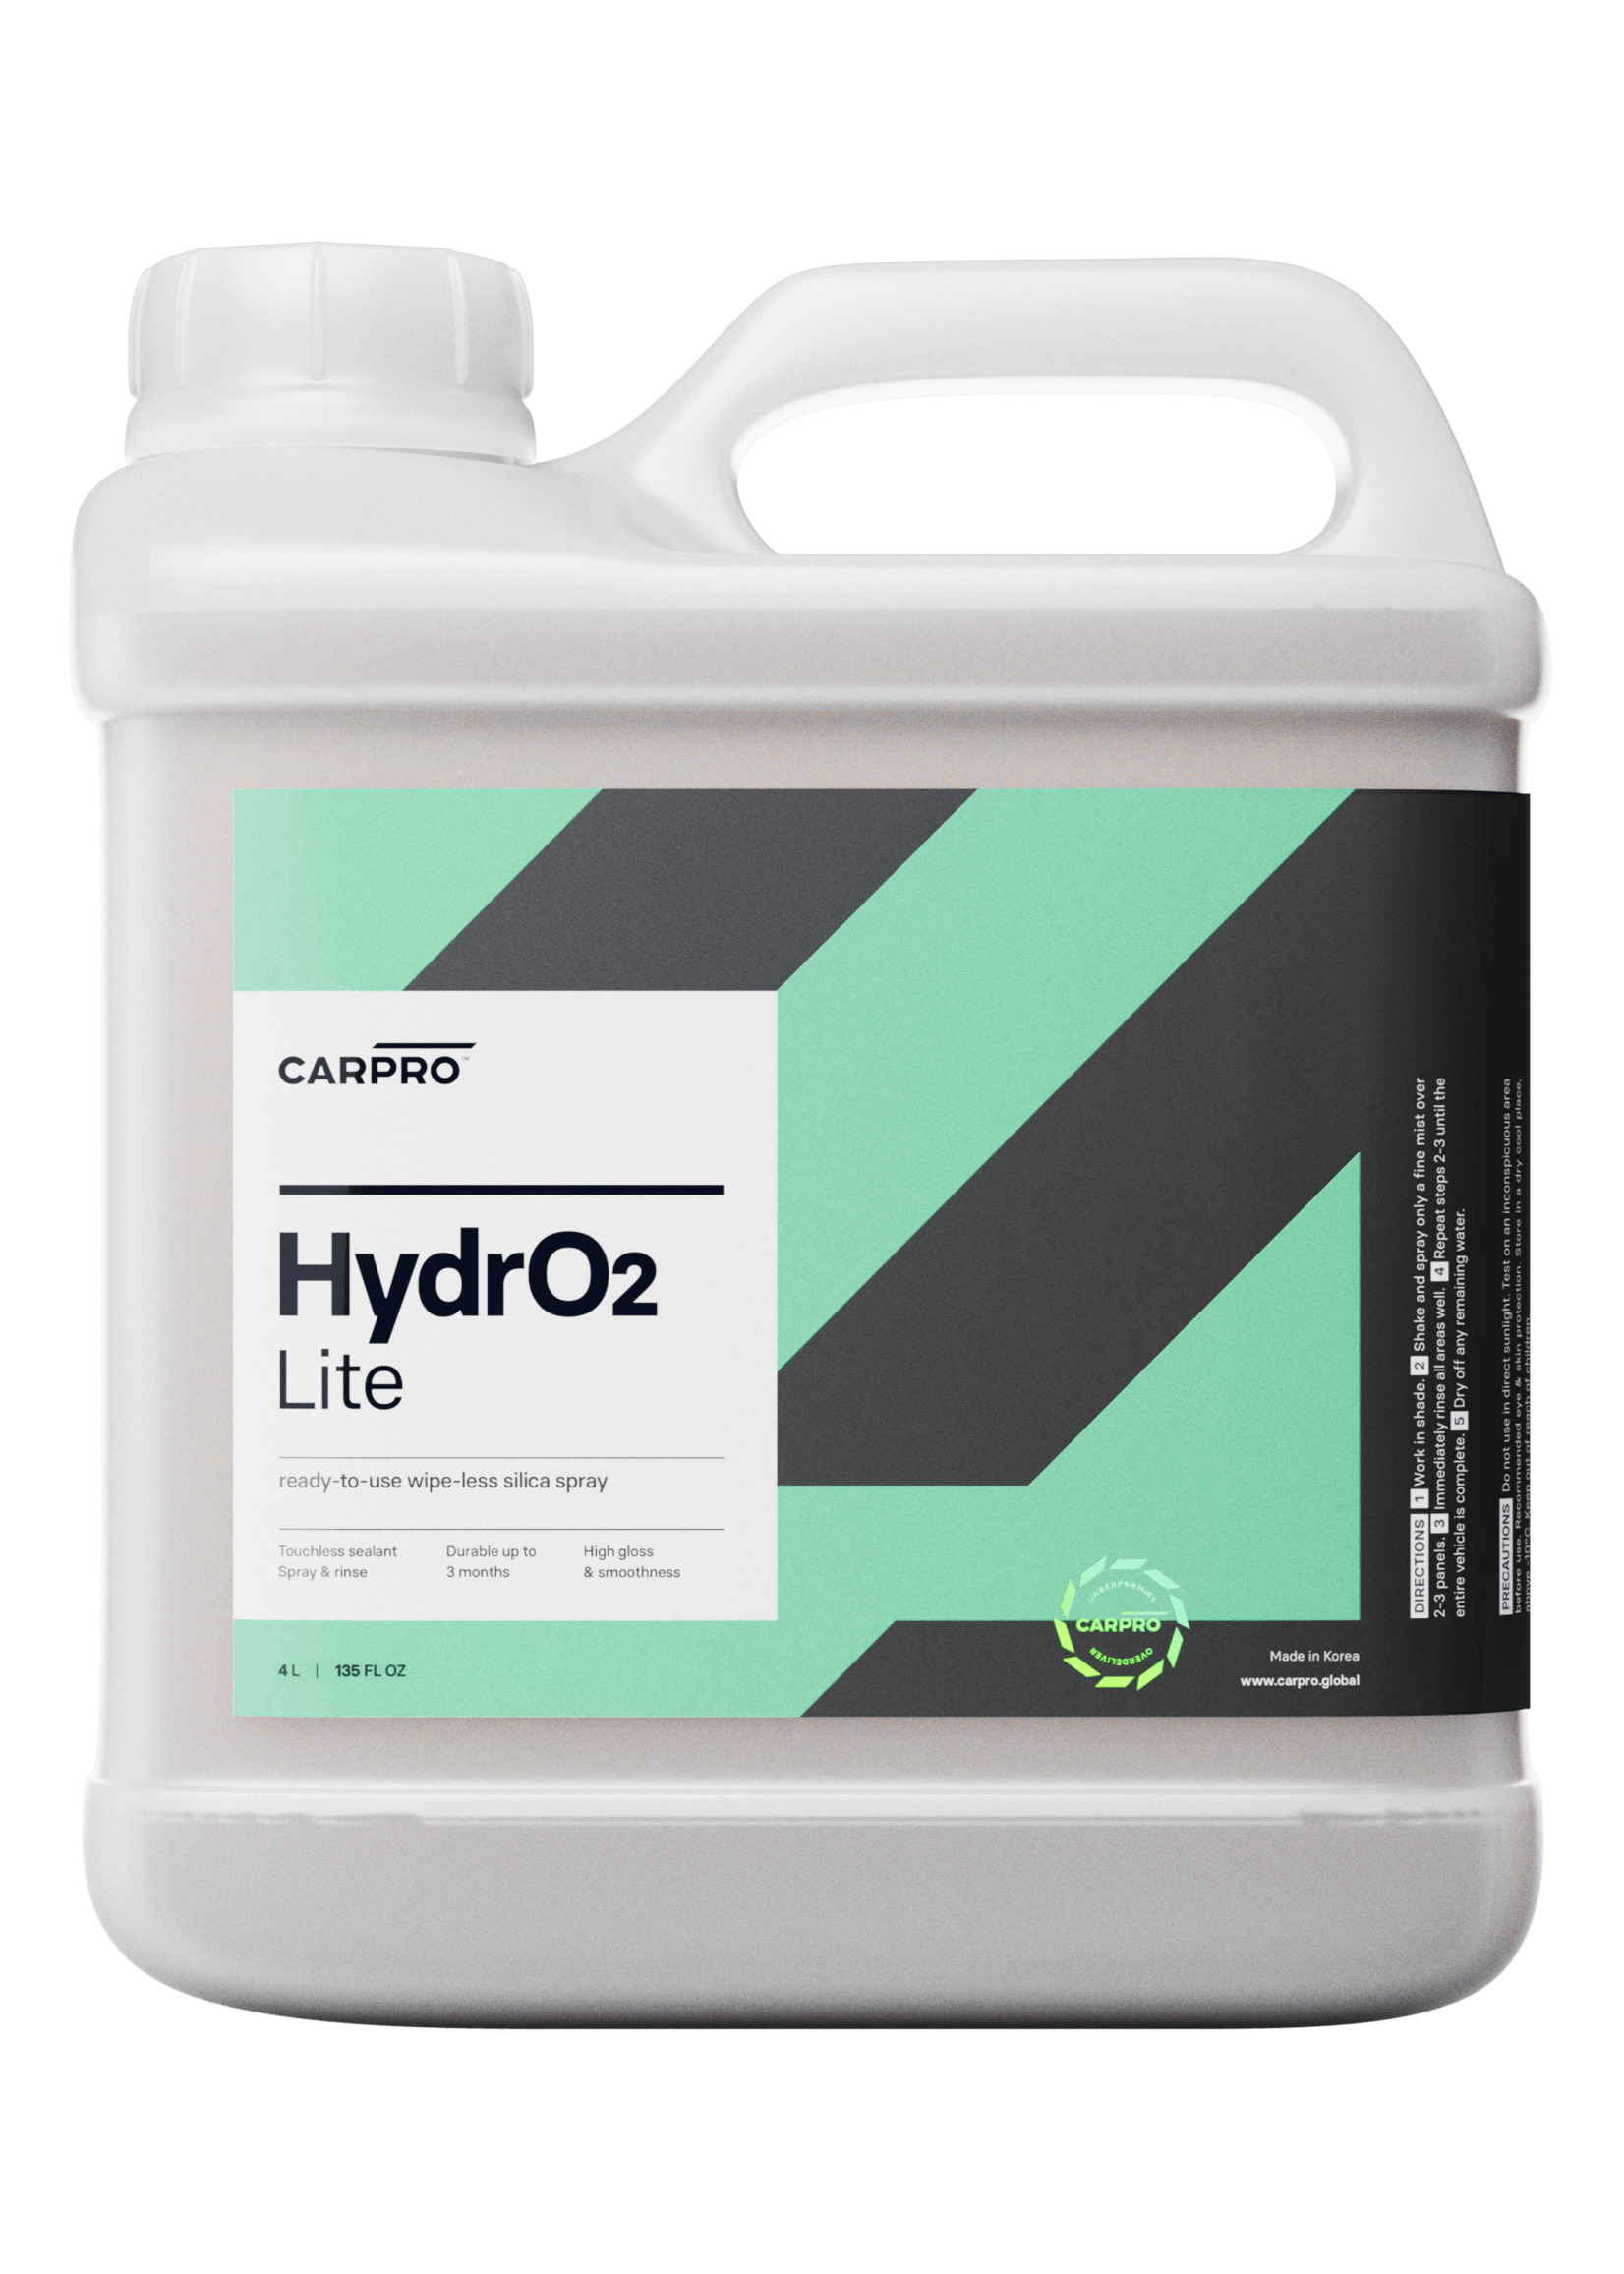 CARPRO HydrO2 Lite (RTU) Silica Sealant